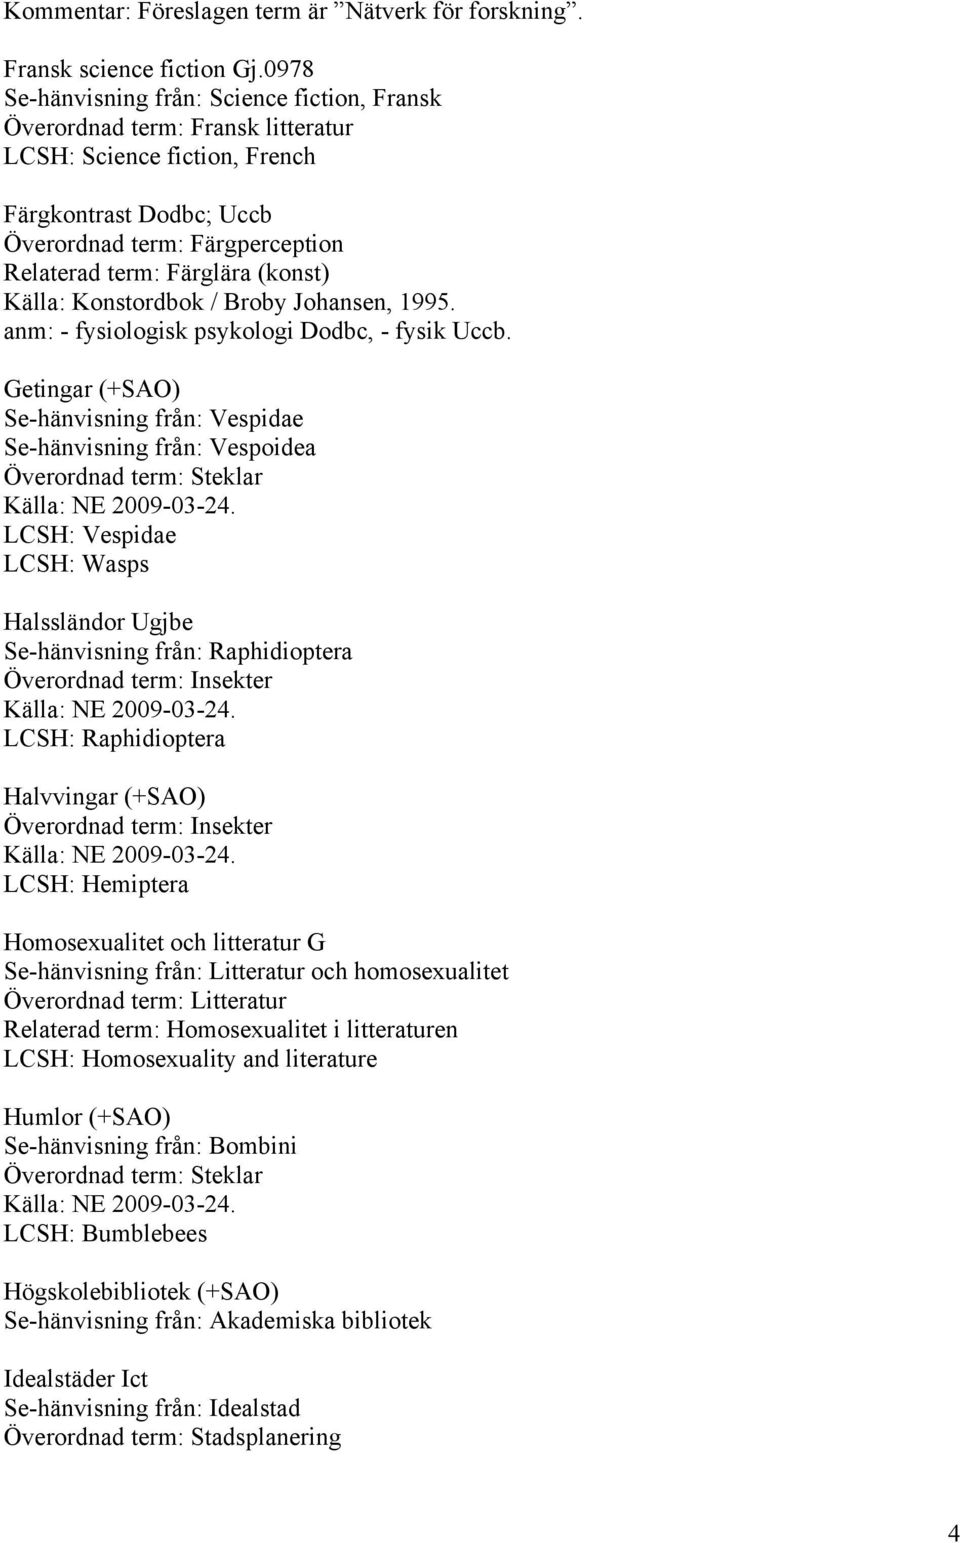 (konst) Källa: Konstordbok / Broby Johansen, 1995. anm: - fysiologisk psykologi Dodbc, - fysik Uccb.